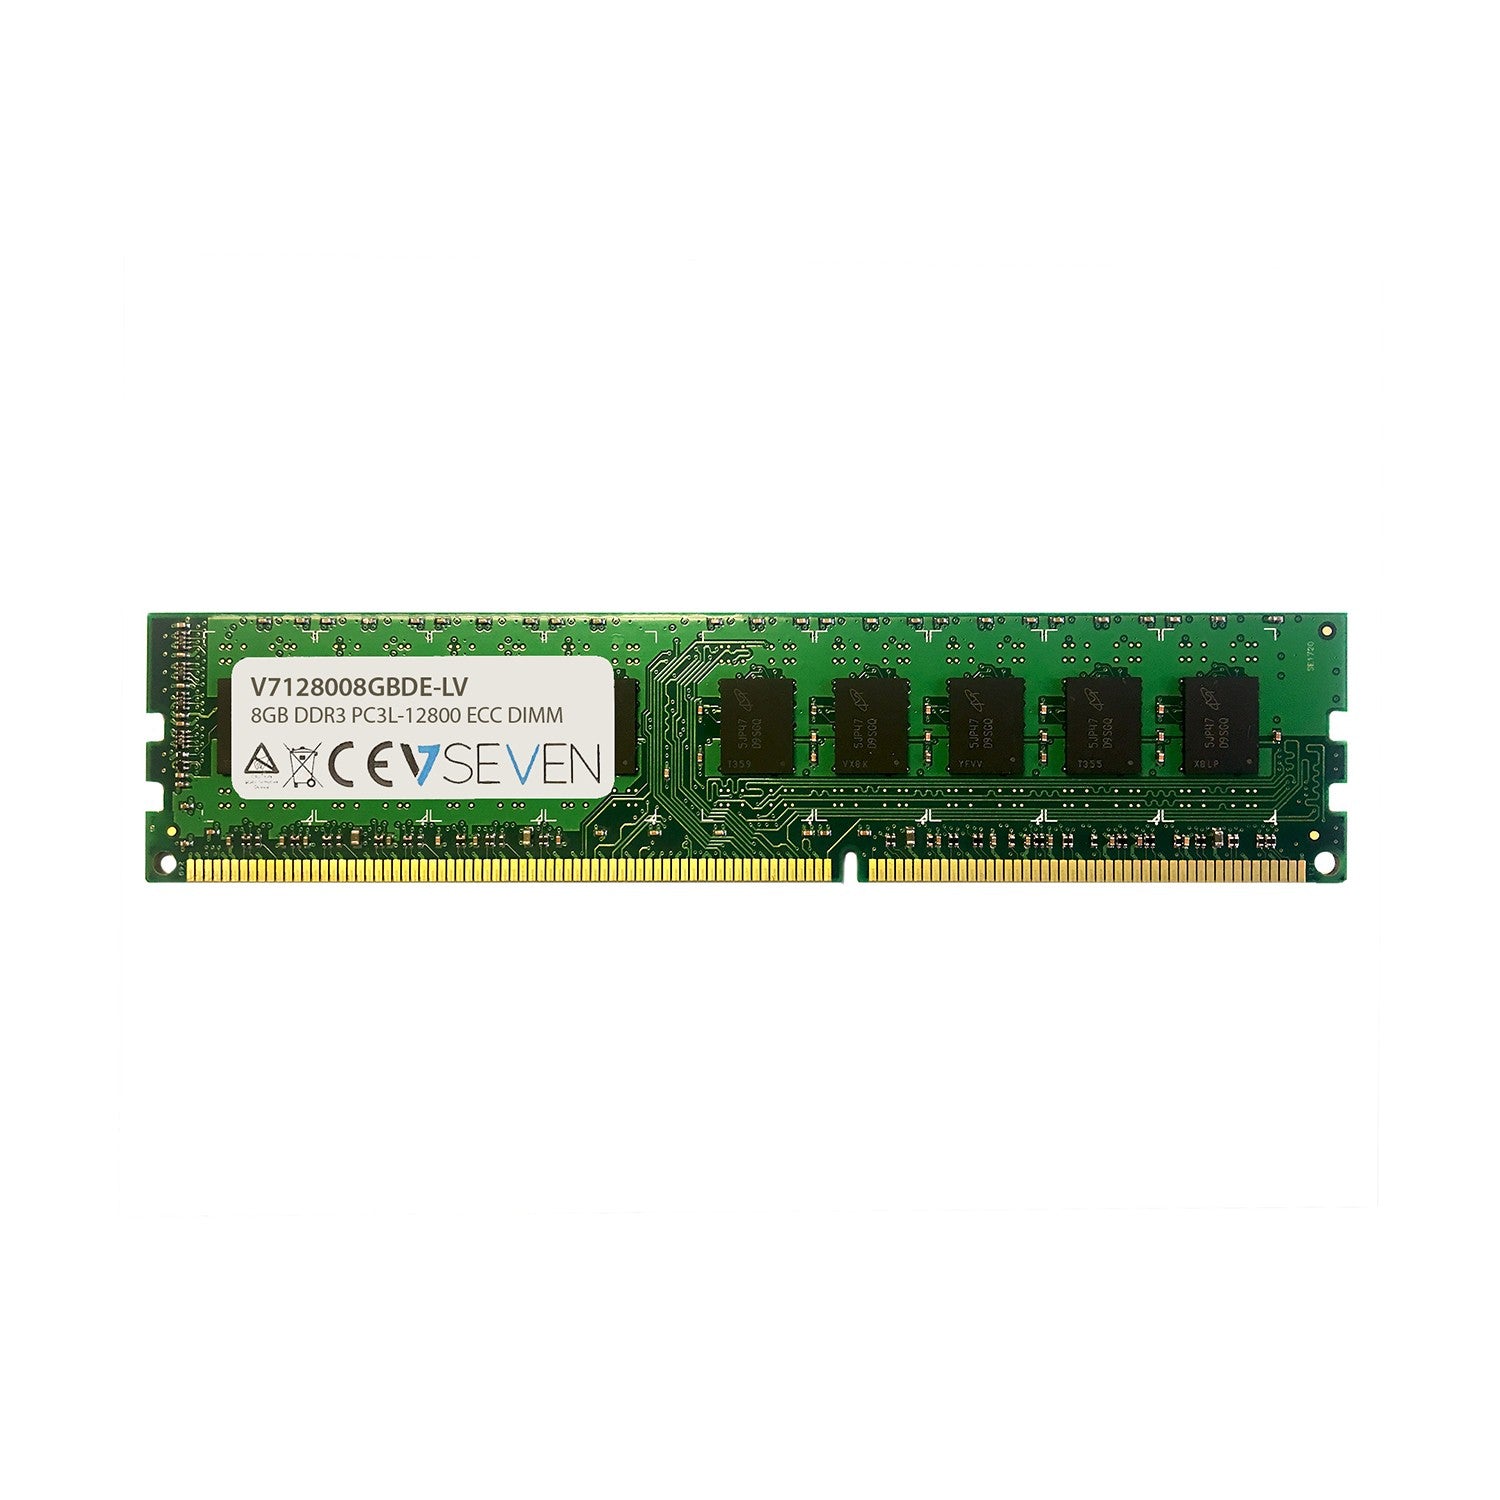 V7 8GB DDR3 PC3L-12800 - 1600MHz ECC DIMM Server Memory Module - V7128008GBDE-LV